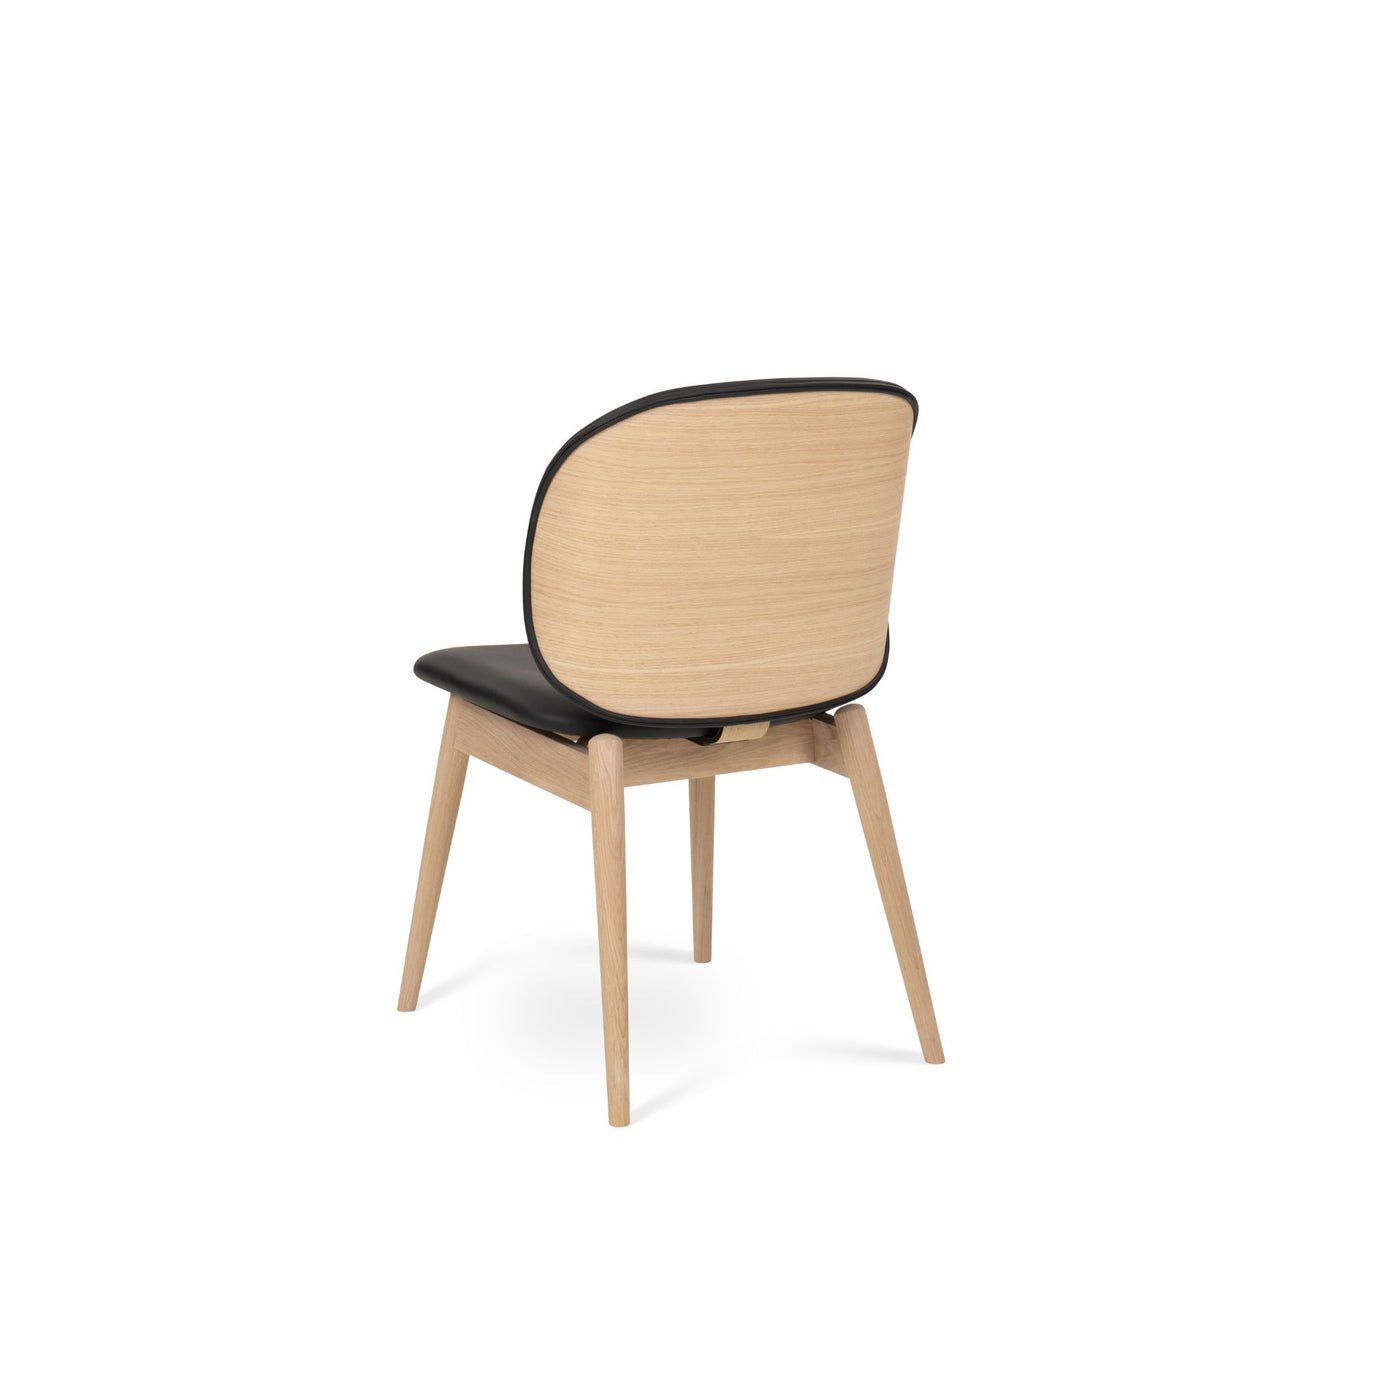 Fritlagt billede af Artus spisebordsstol i hvidpigmenteret lakeret eg og med læder fra PBJ Designhouse.